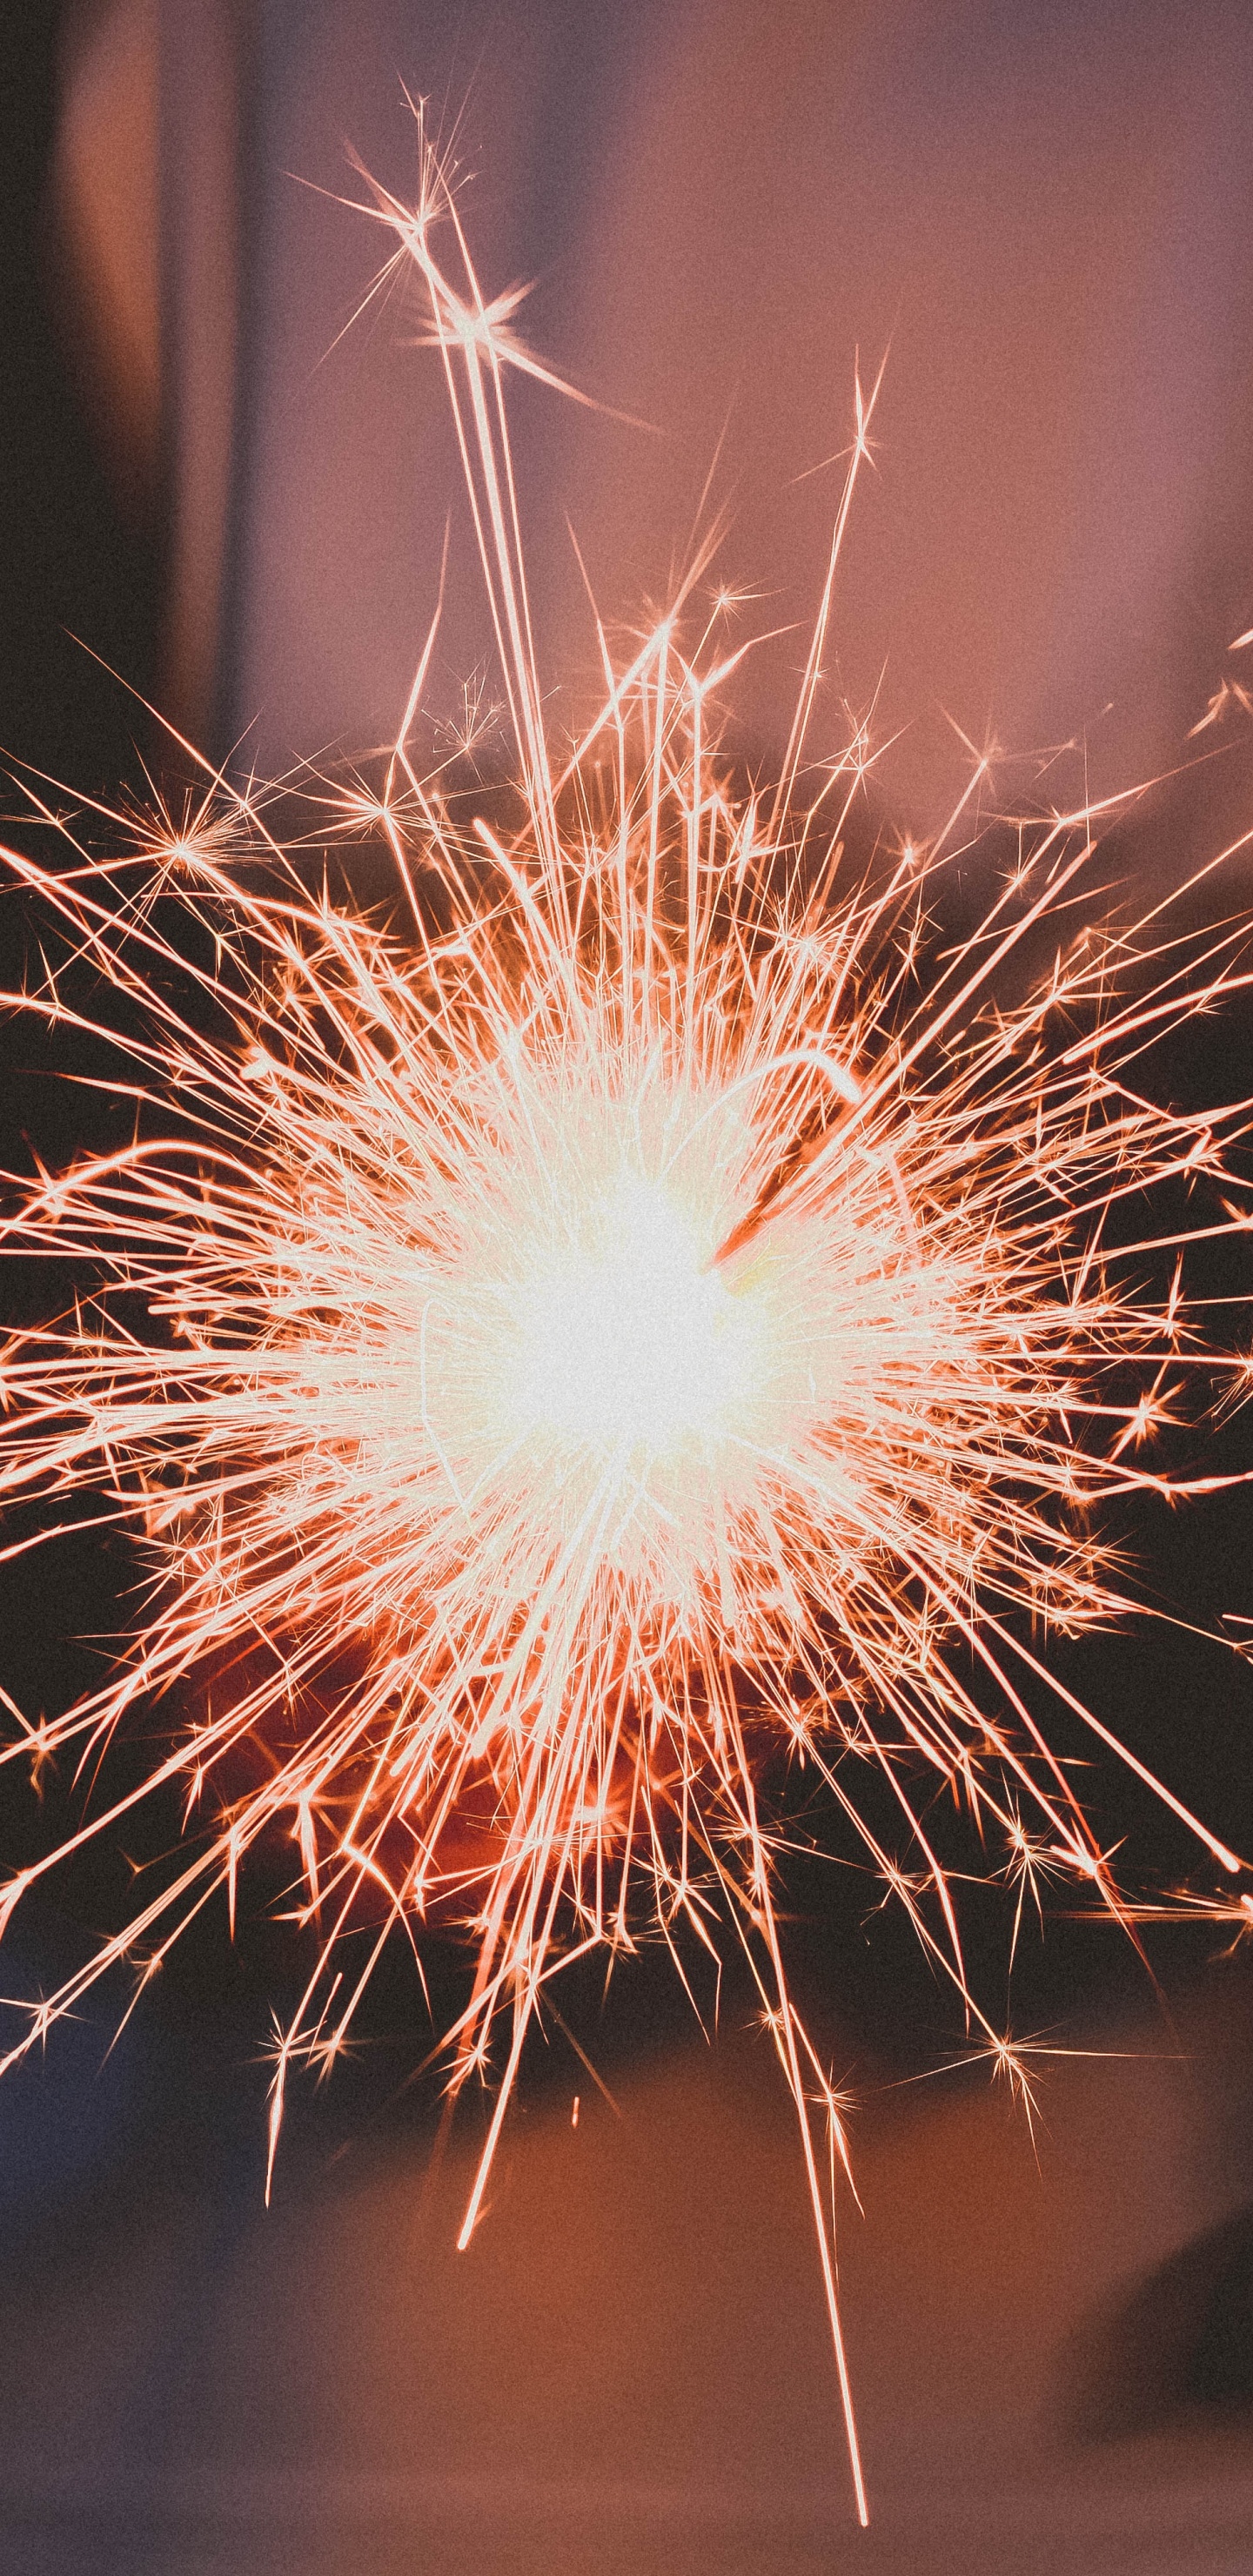 Feuerwerk, Wunderkerze, Veranstaltung, Neue Jahre Tag, Diwali. Wallpaper in 1440x2960 Resolution